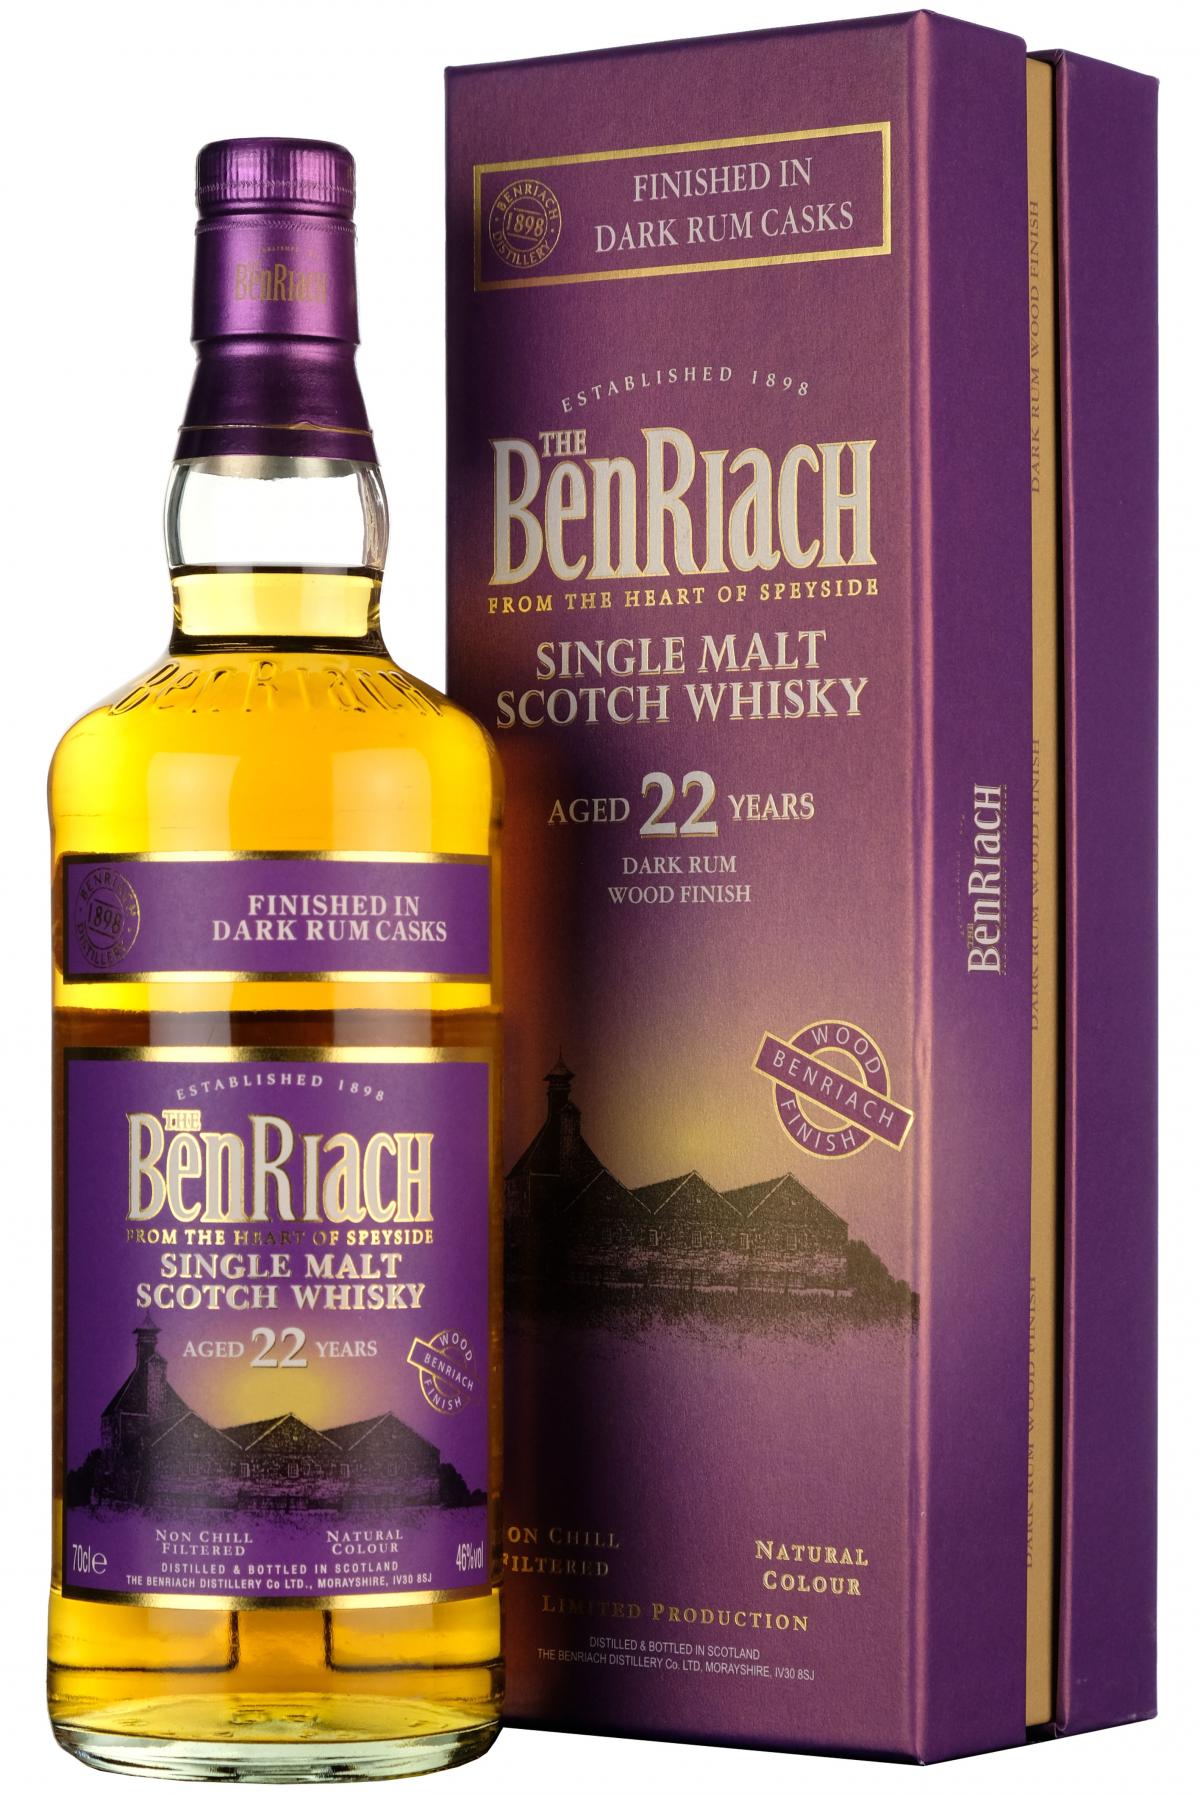 Benriach 22 Year Old Dark Rum Finish